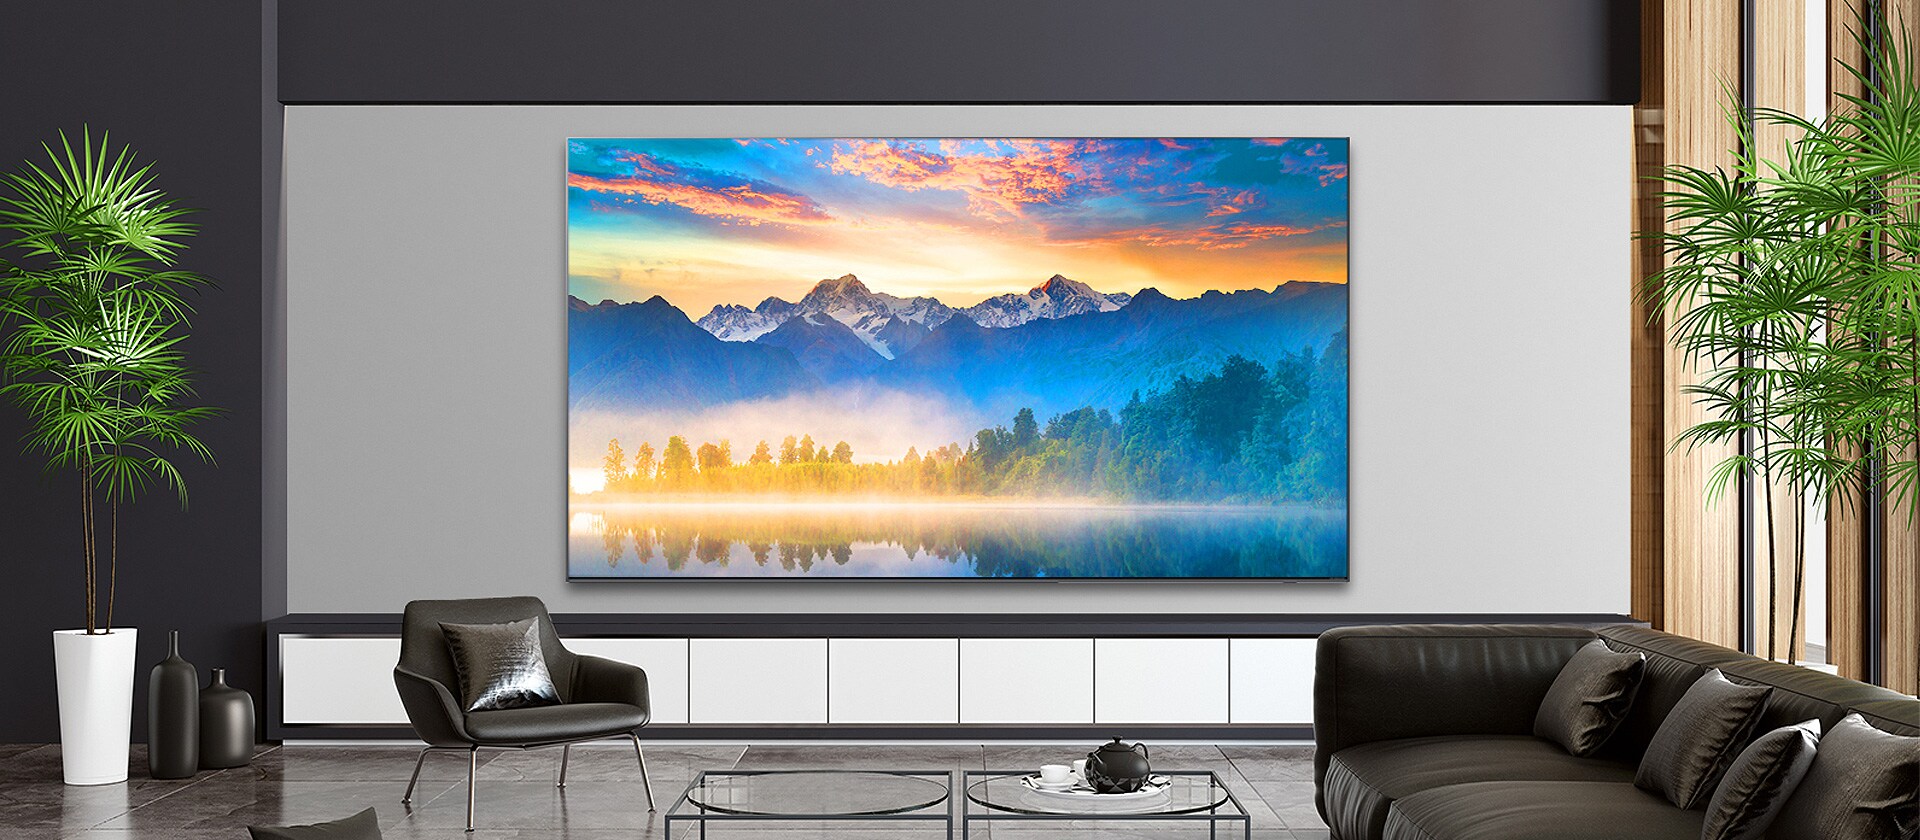 על מסך טלוויזיה התלויה על קיר בסלון, מוצגת תמונף נוף טבעי.